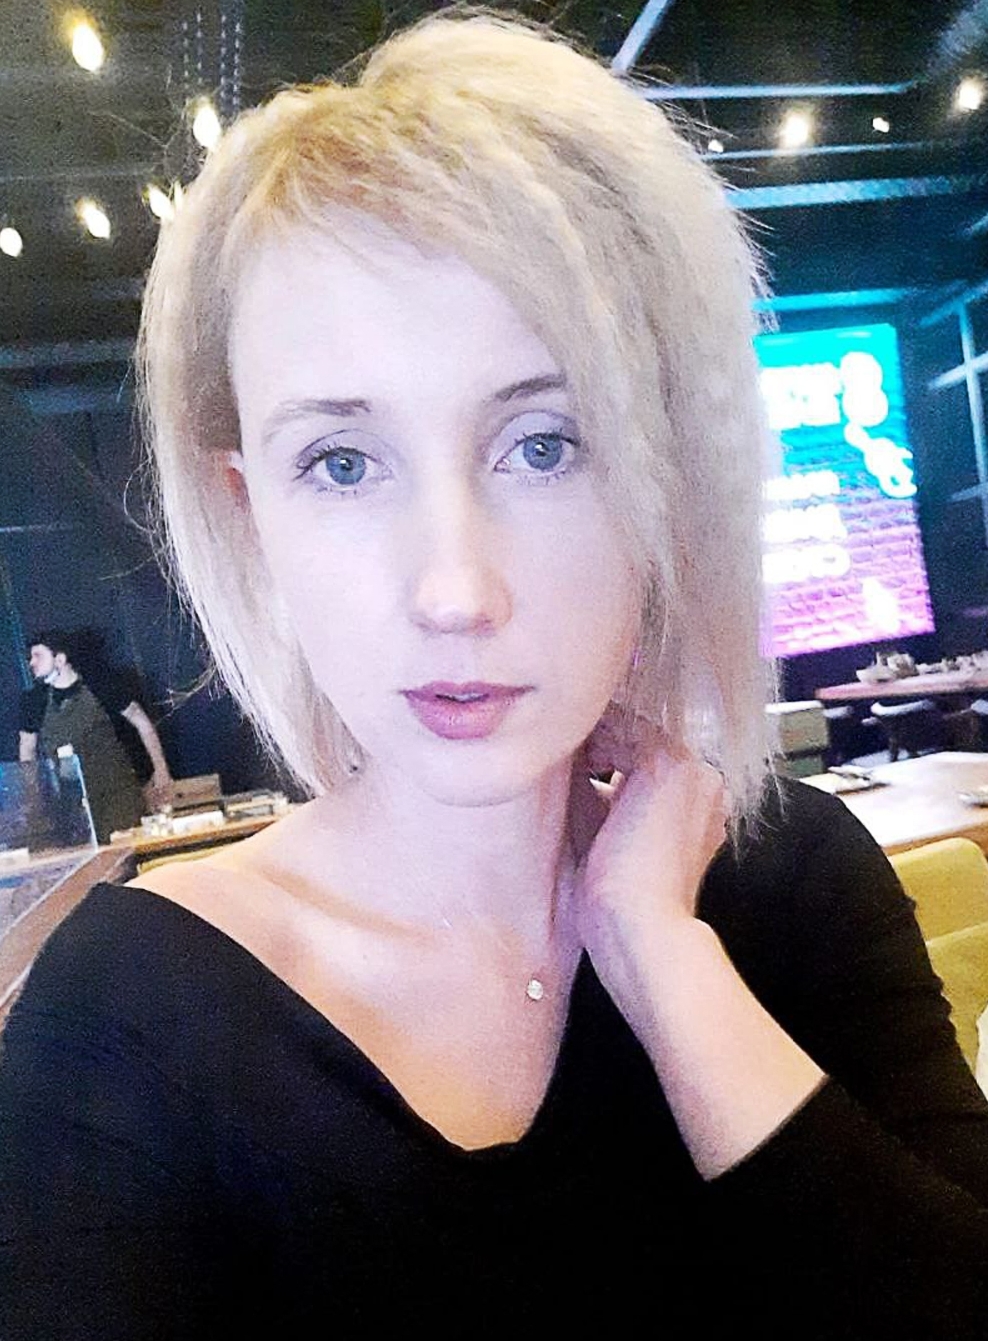 Анастасия Хлусова родилась в 1985 году, стаж работы на Брянском химзаводе - 5 лет.